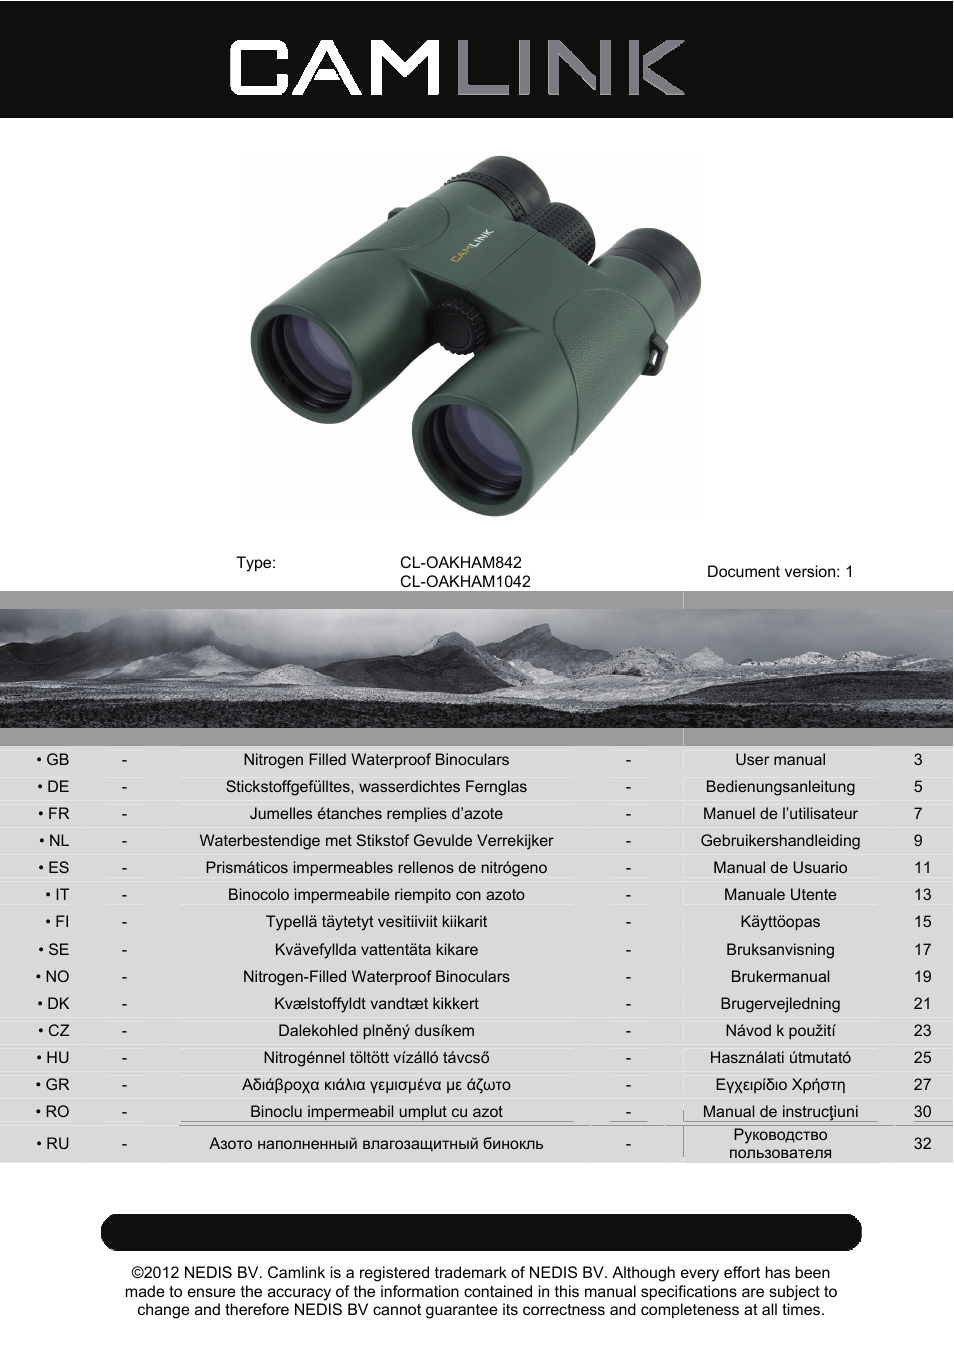 8x42 mm binoculars